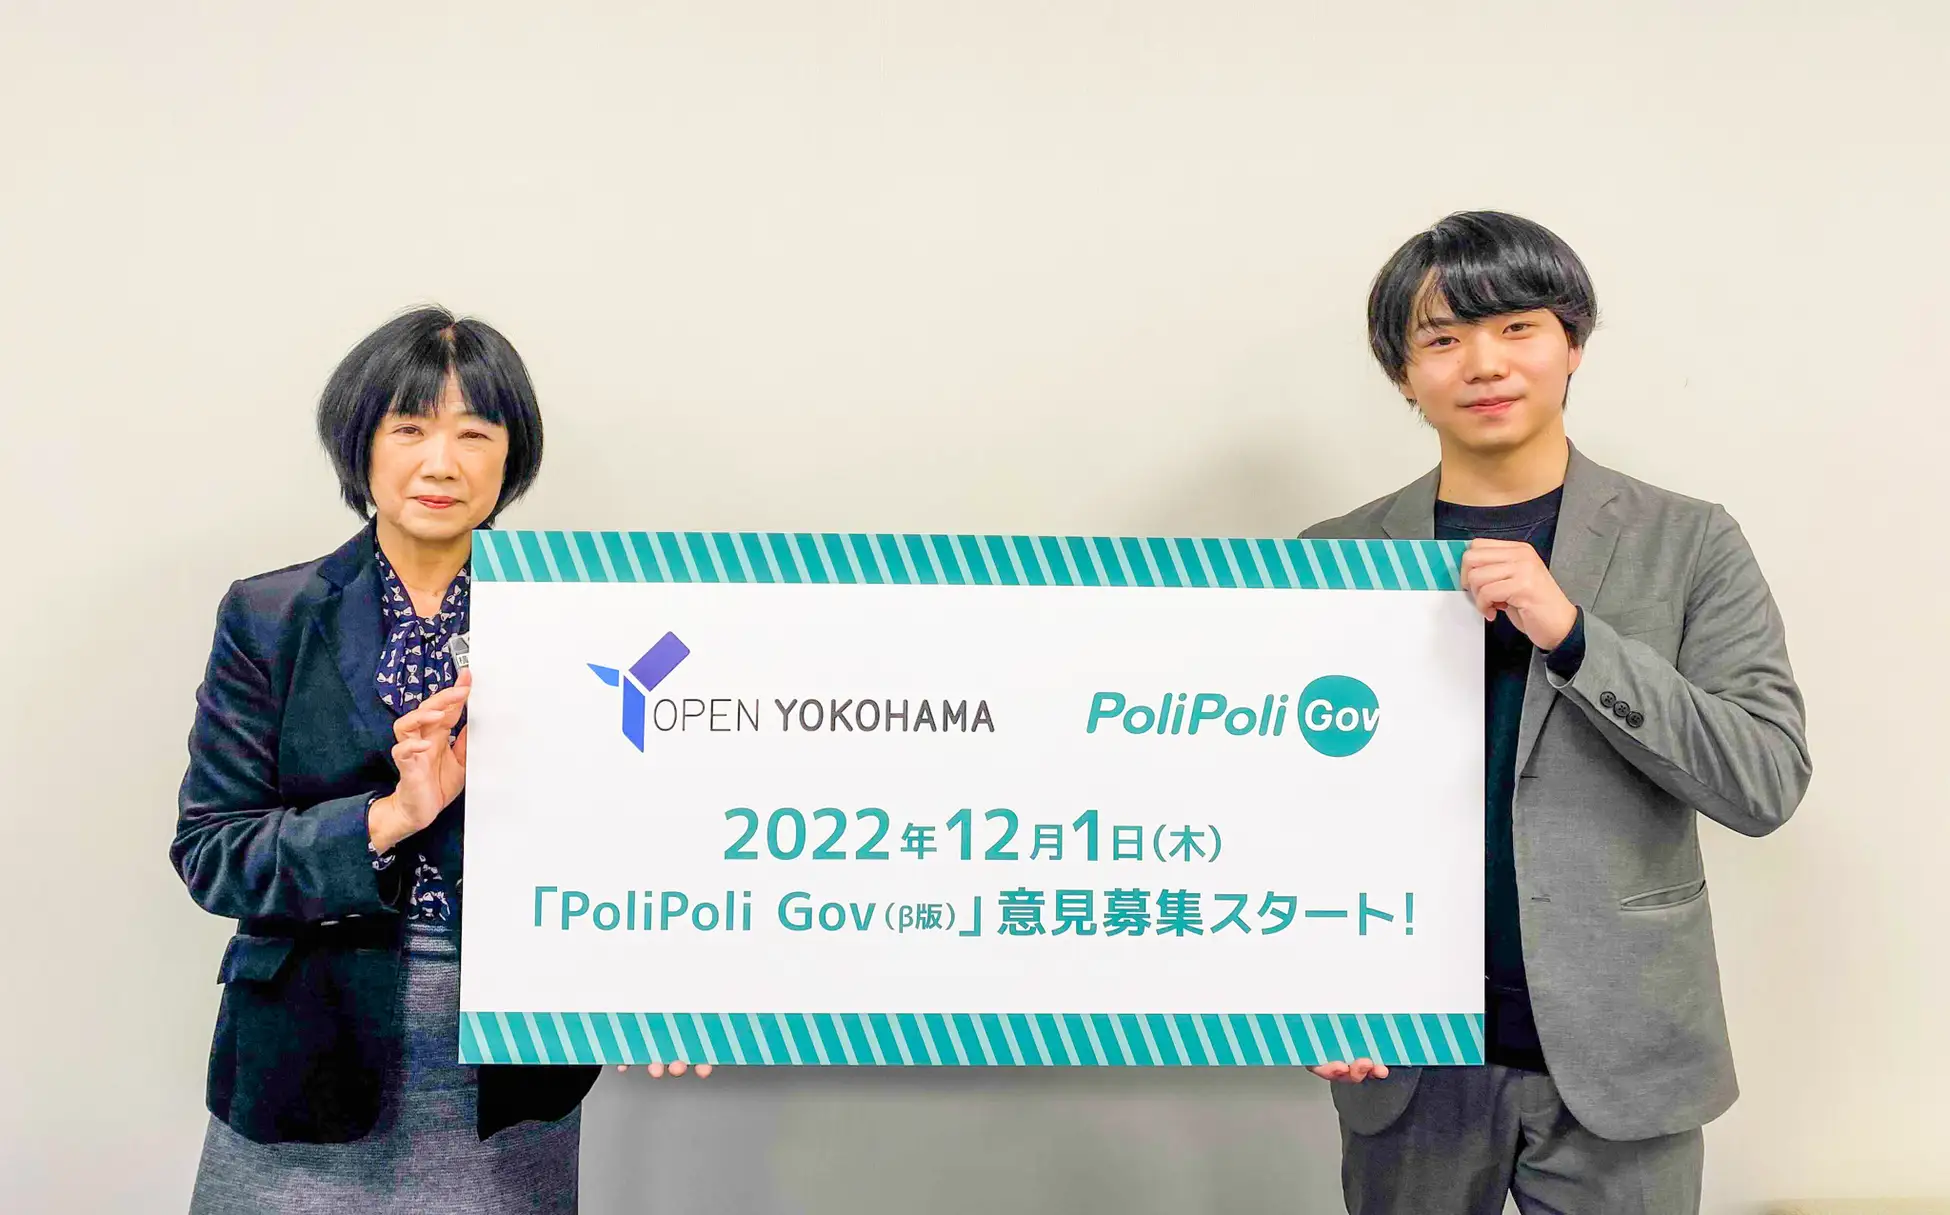 横浜市、「PoliPoli Gov（β版）」を活用し、オンライン上で２つのテーマの意見募集[ニュース]